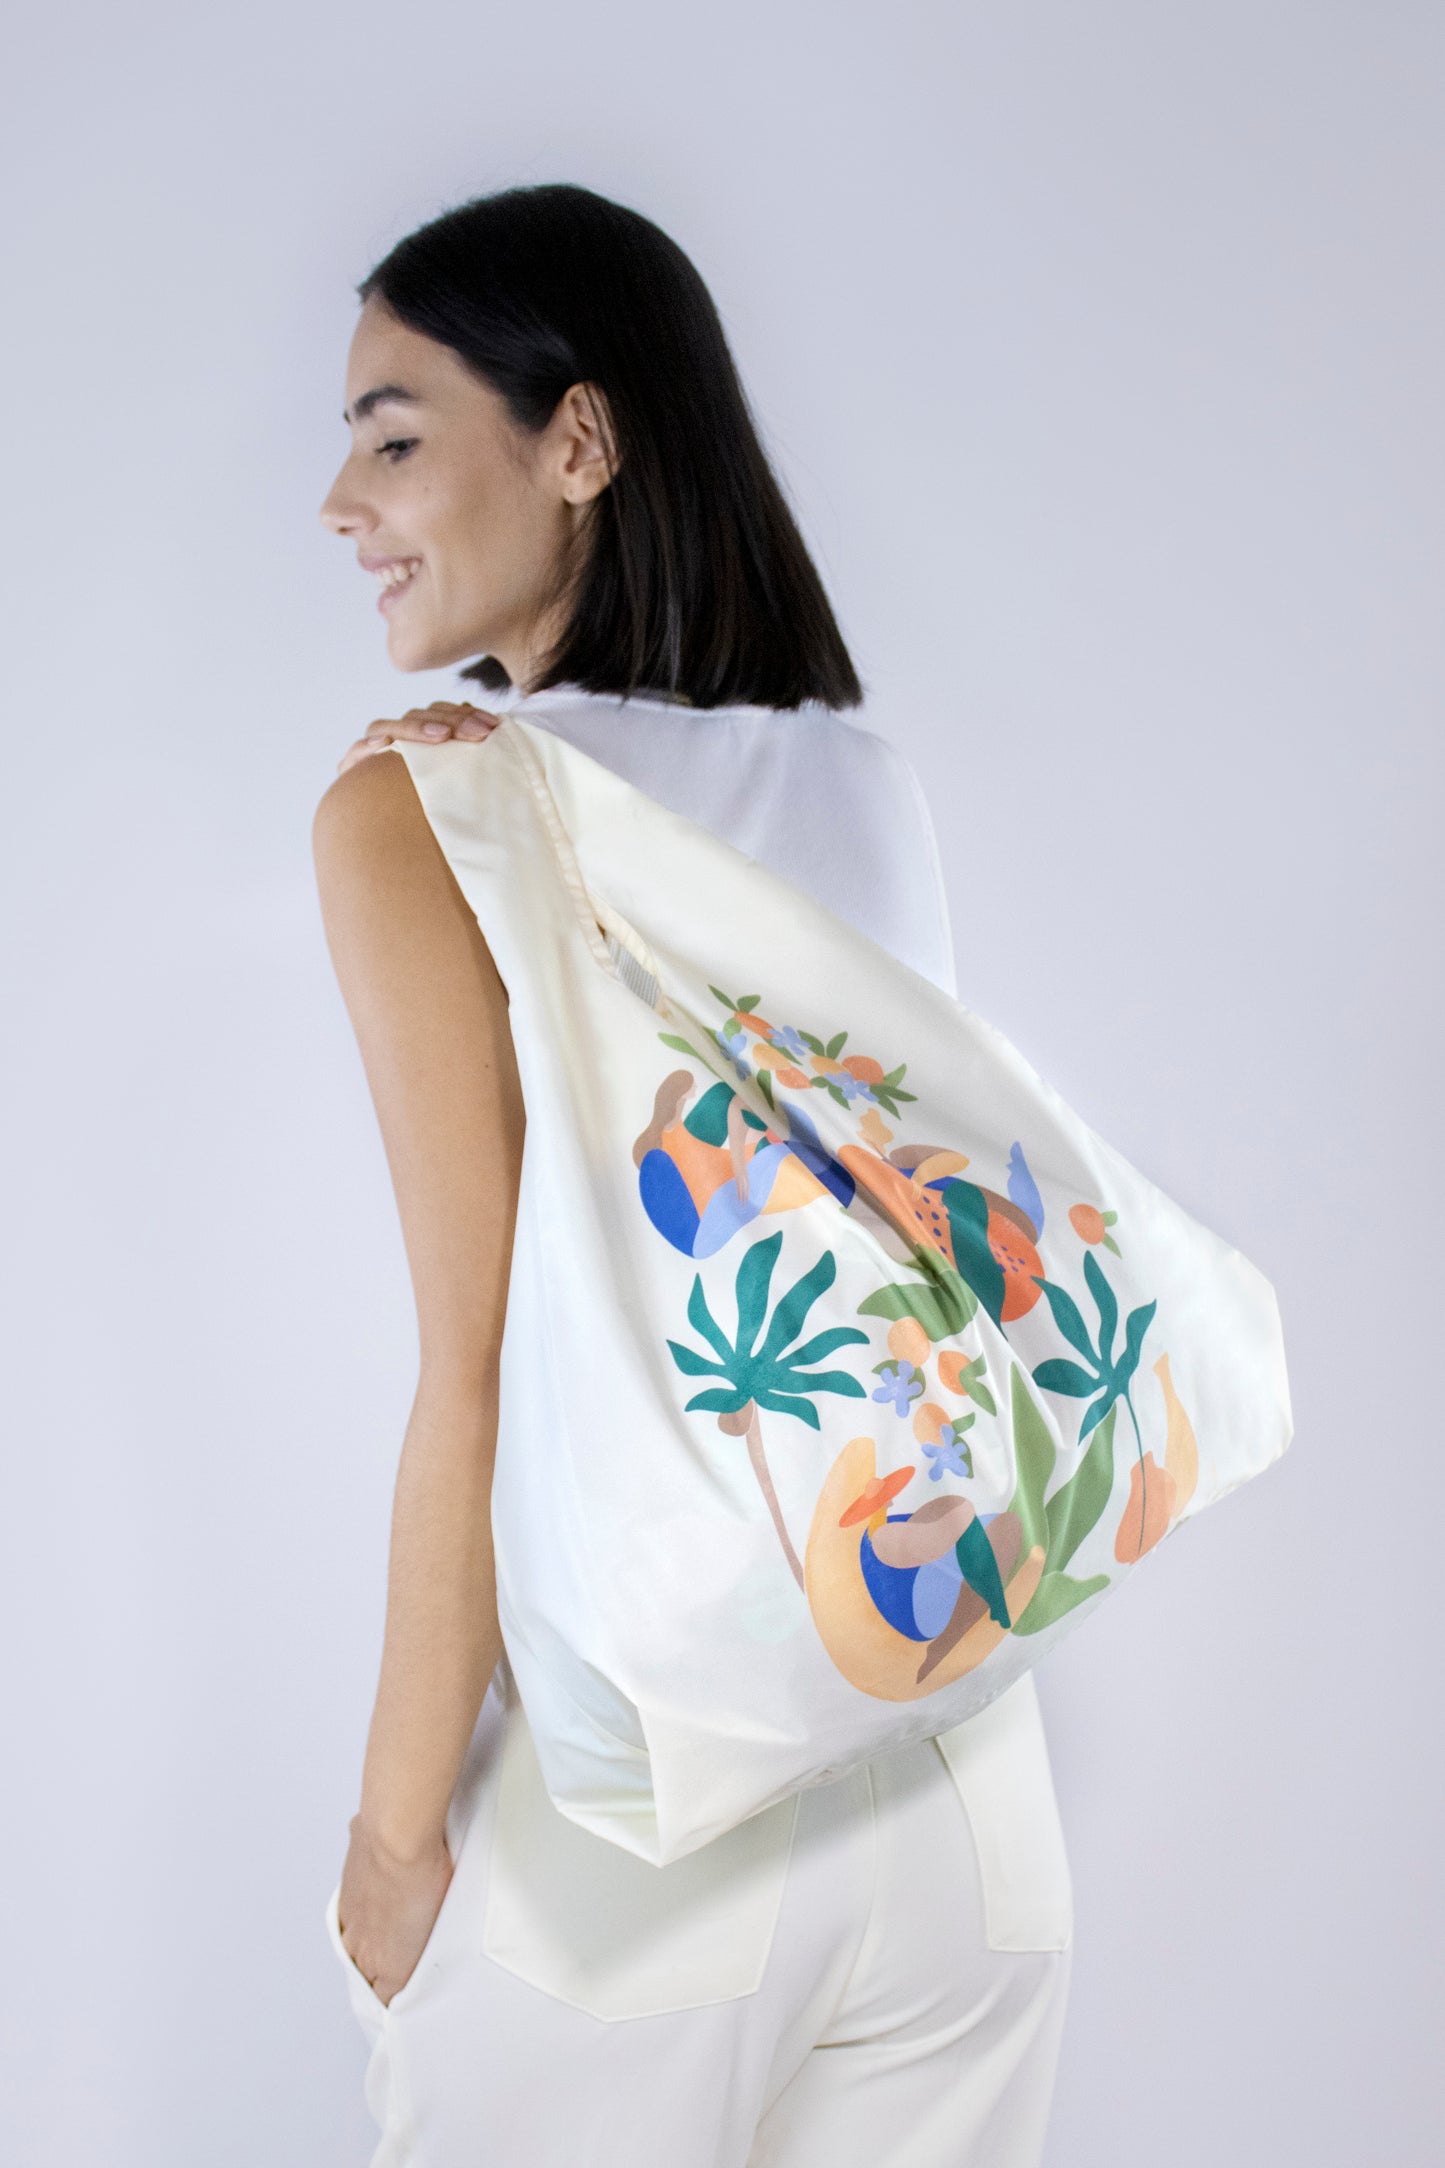 Kind Bag Recycled Plastic Reusable Bag Maggie Stephenson Fruit Cabana Singapore